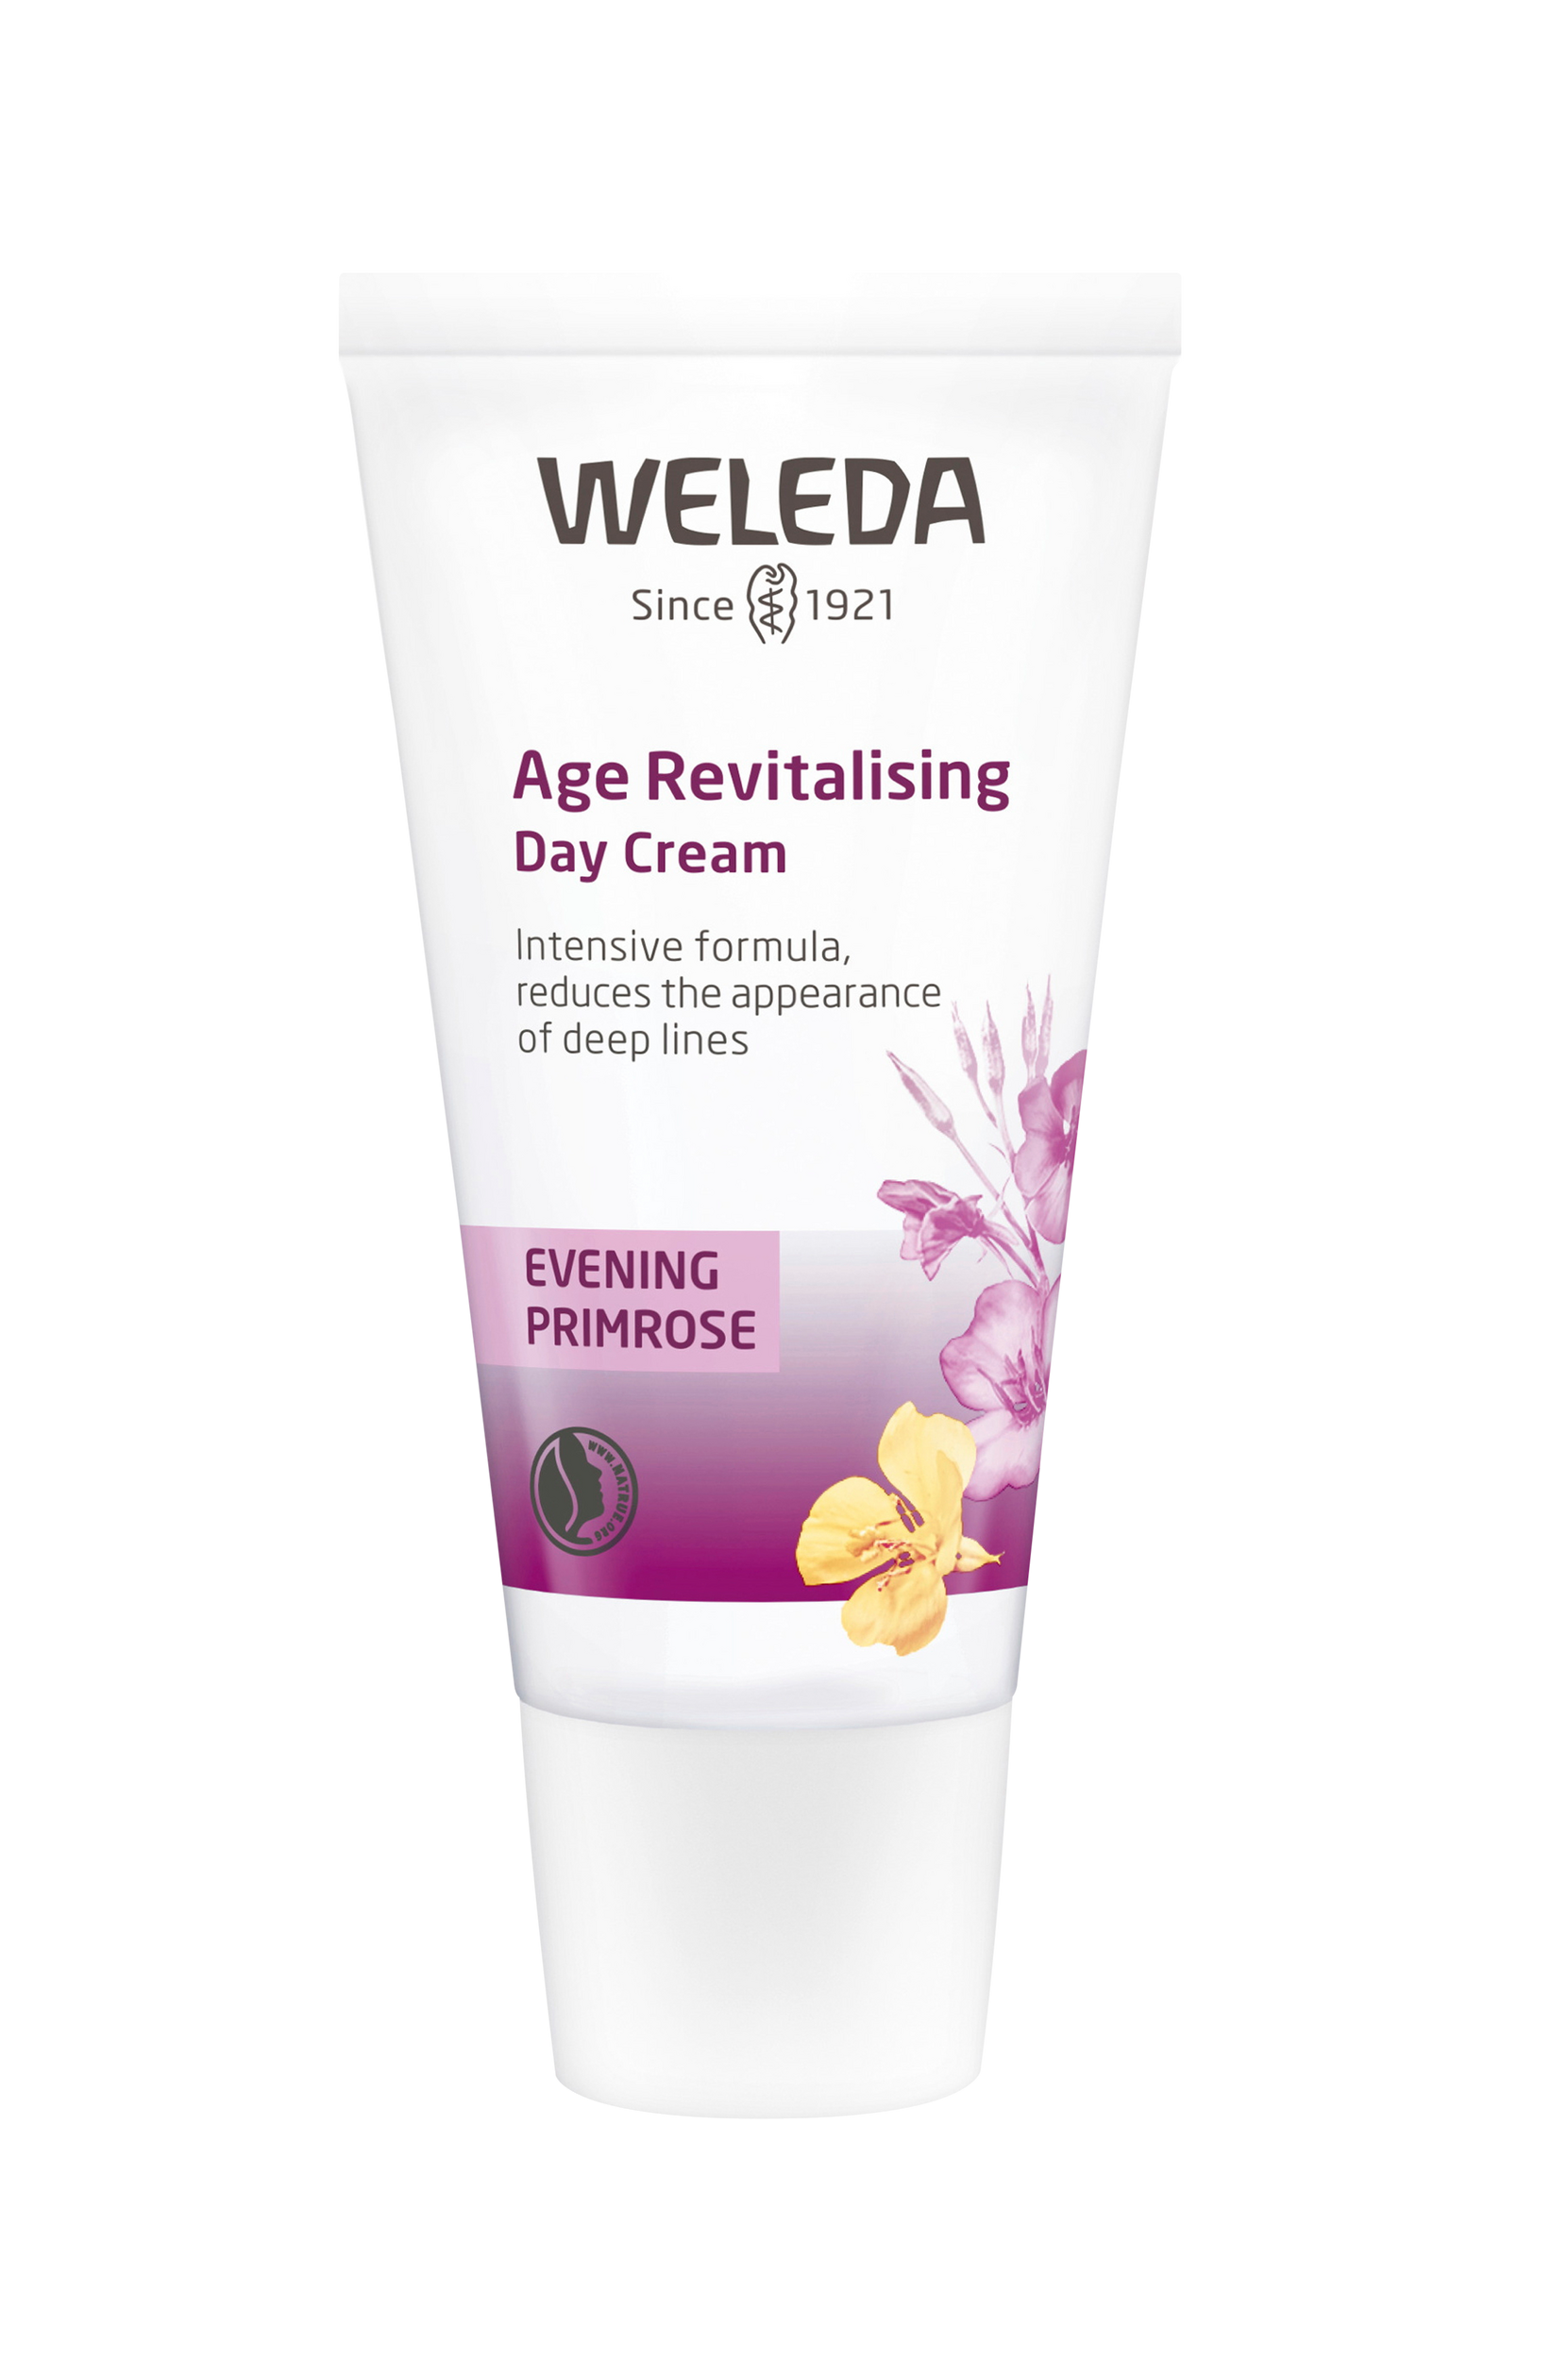 Evening Primrose Age Revitalising Day Cream, 30 ml, Weleda